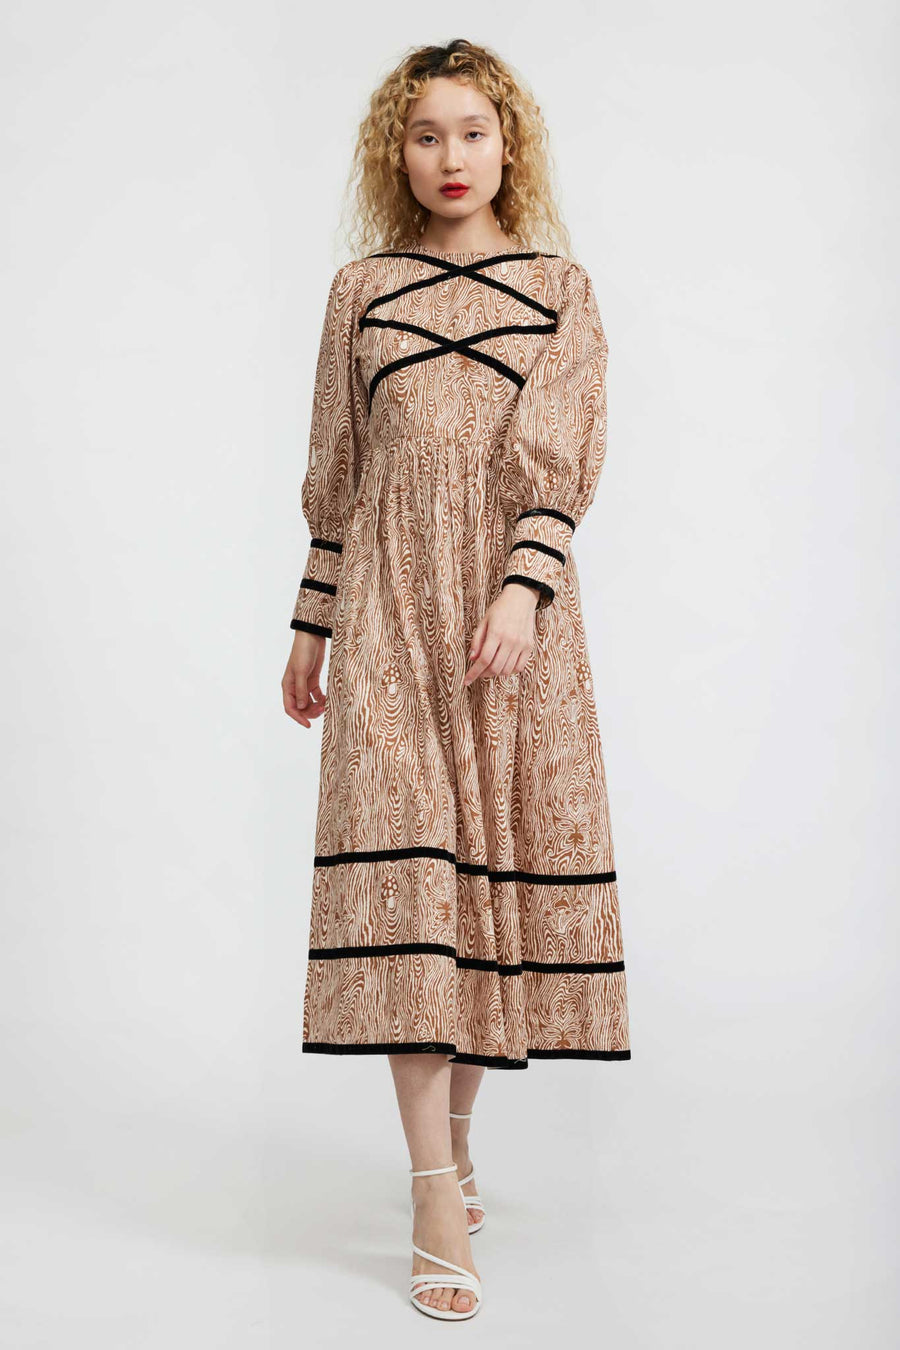 BATSHEVA - Clemmie Dress in Woodgrain Fantasy